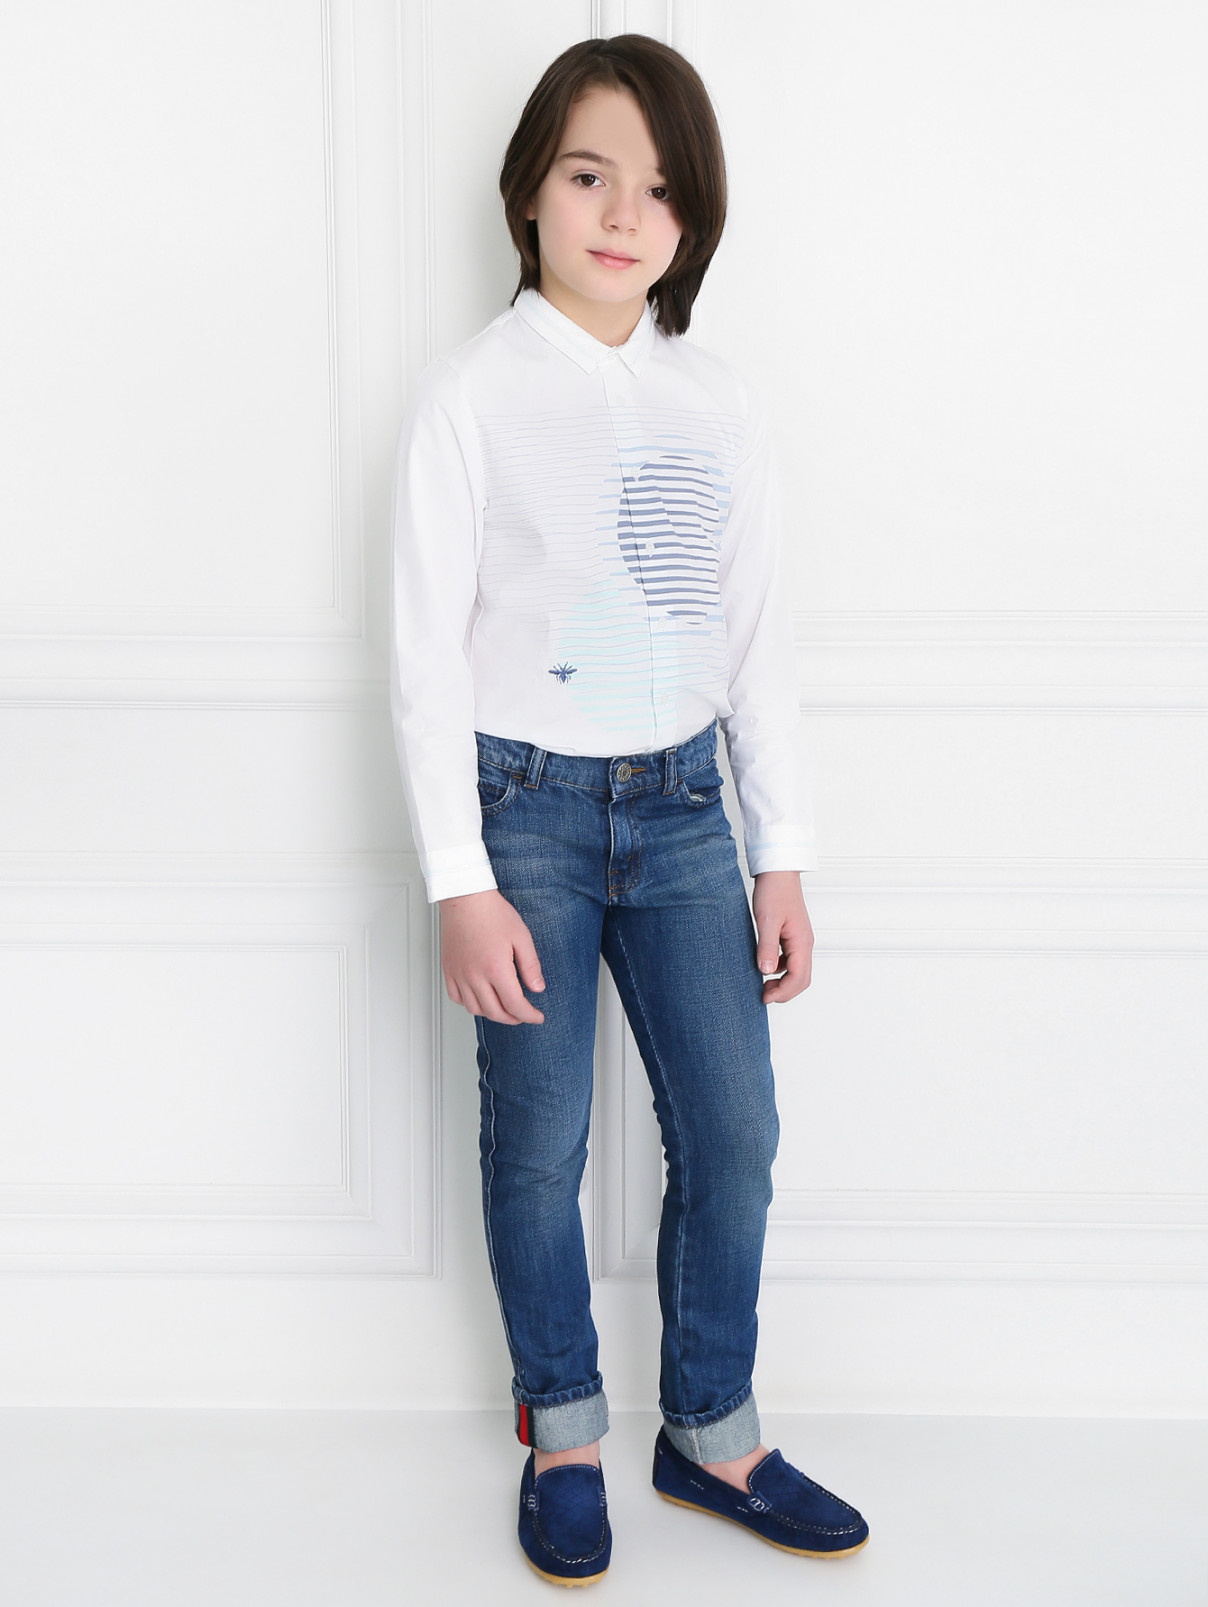 Рубашка из хлопка с вышивкой и принтом Baby Dior  –  Модель Общий вид  – Цвет:  Белый